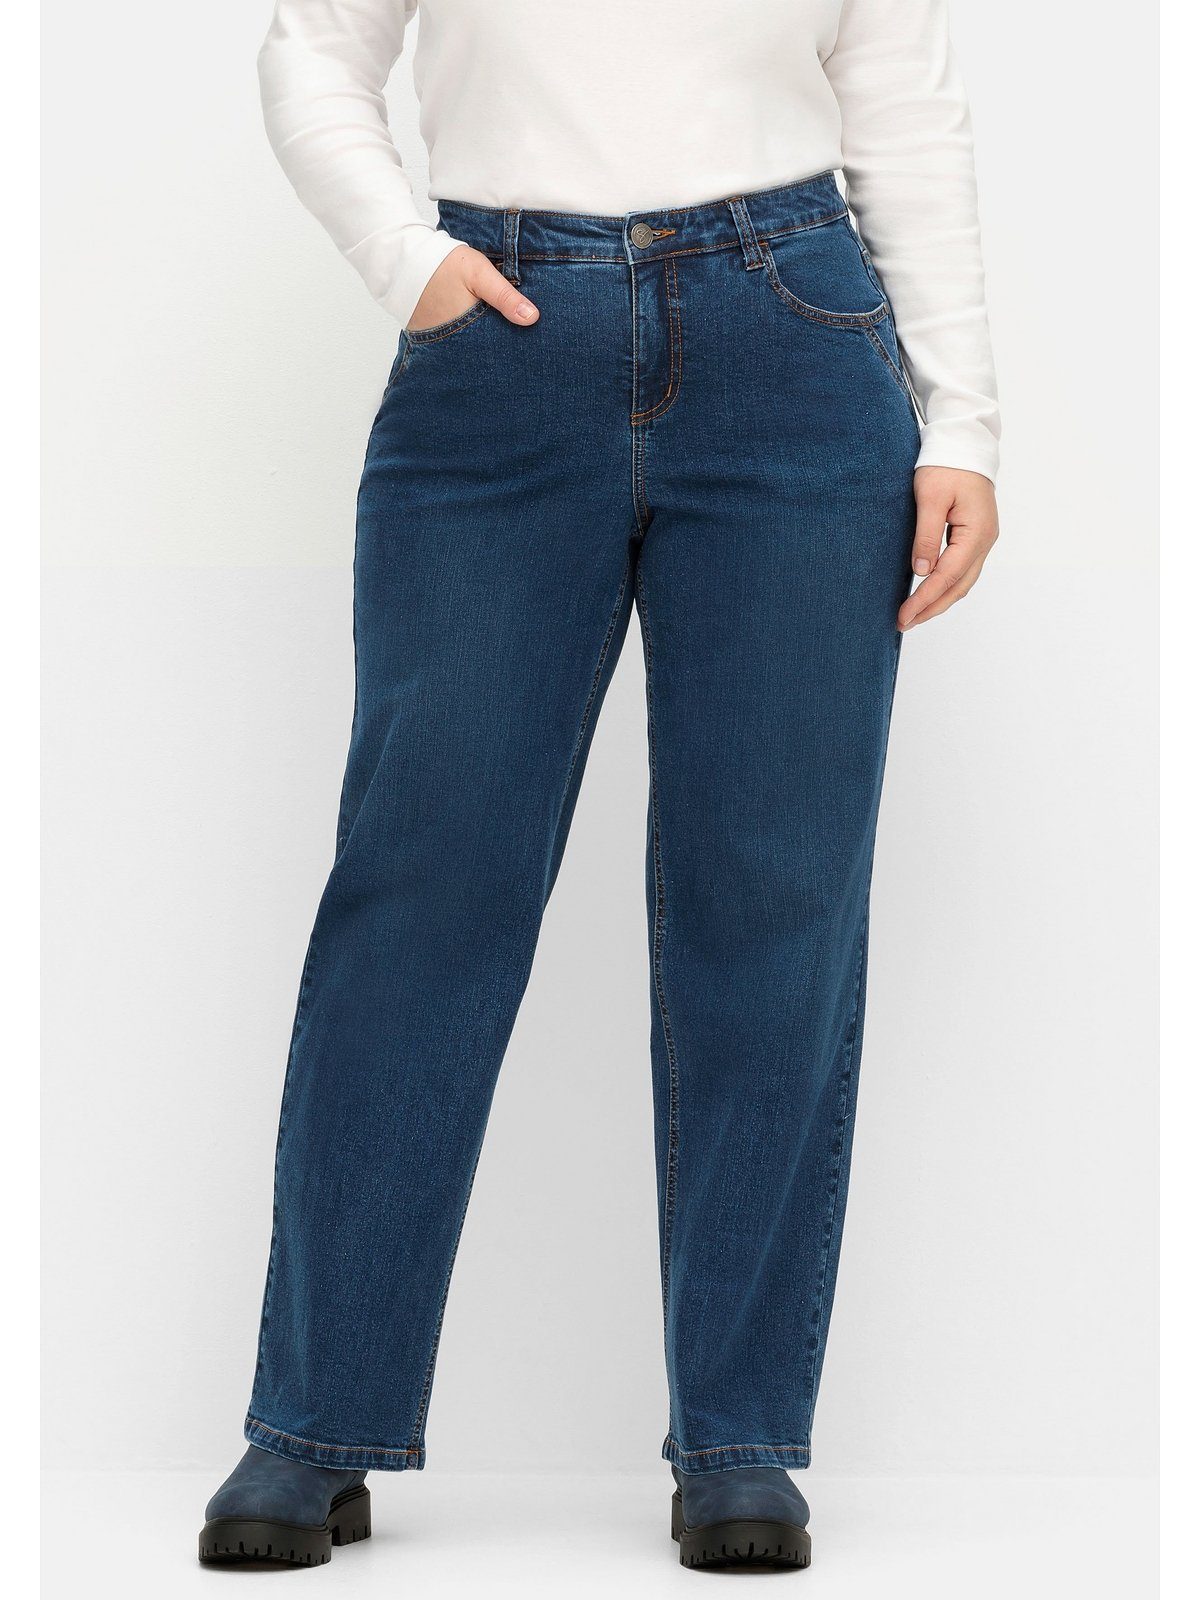 ELLA Weite Denim Jeans Oberschenkel blue kräftige Sheego und Waden Größen Große dark für